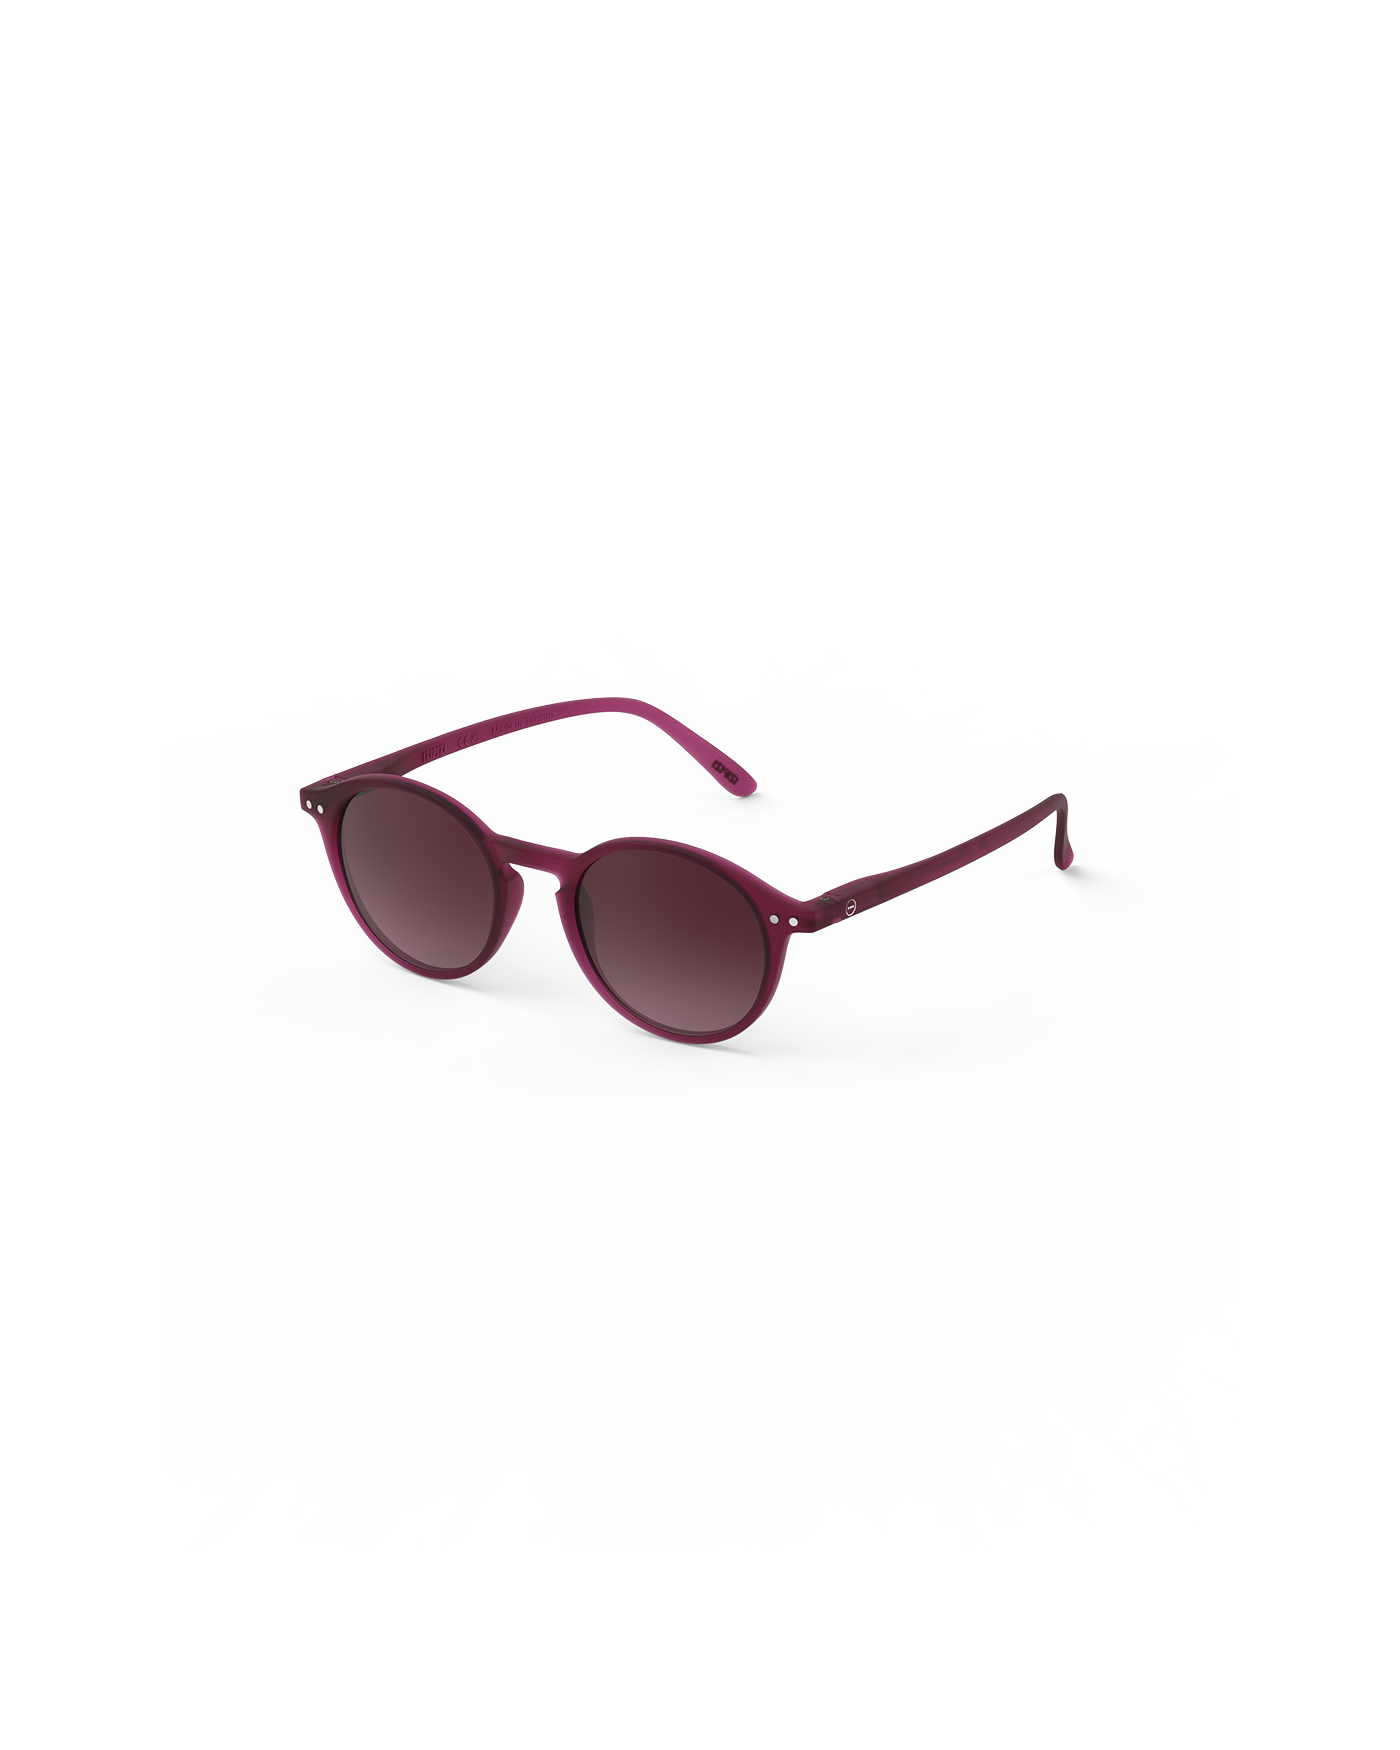 Sunglasses  - #D Antique Purple